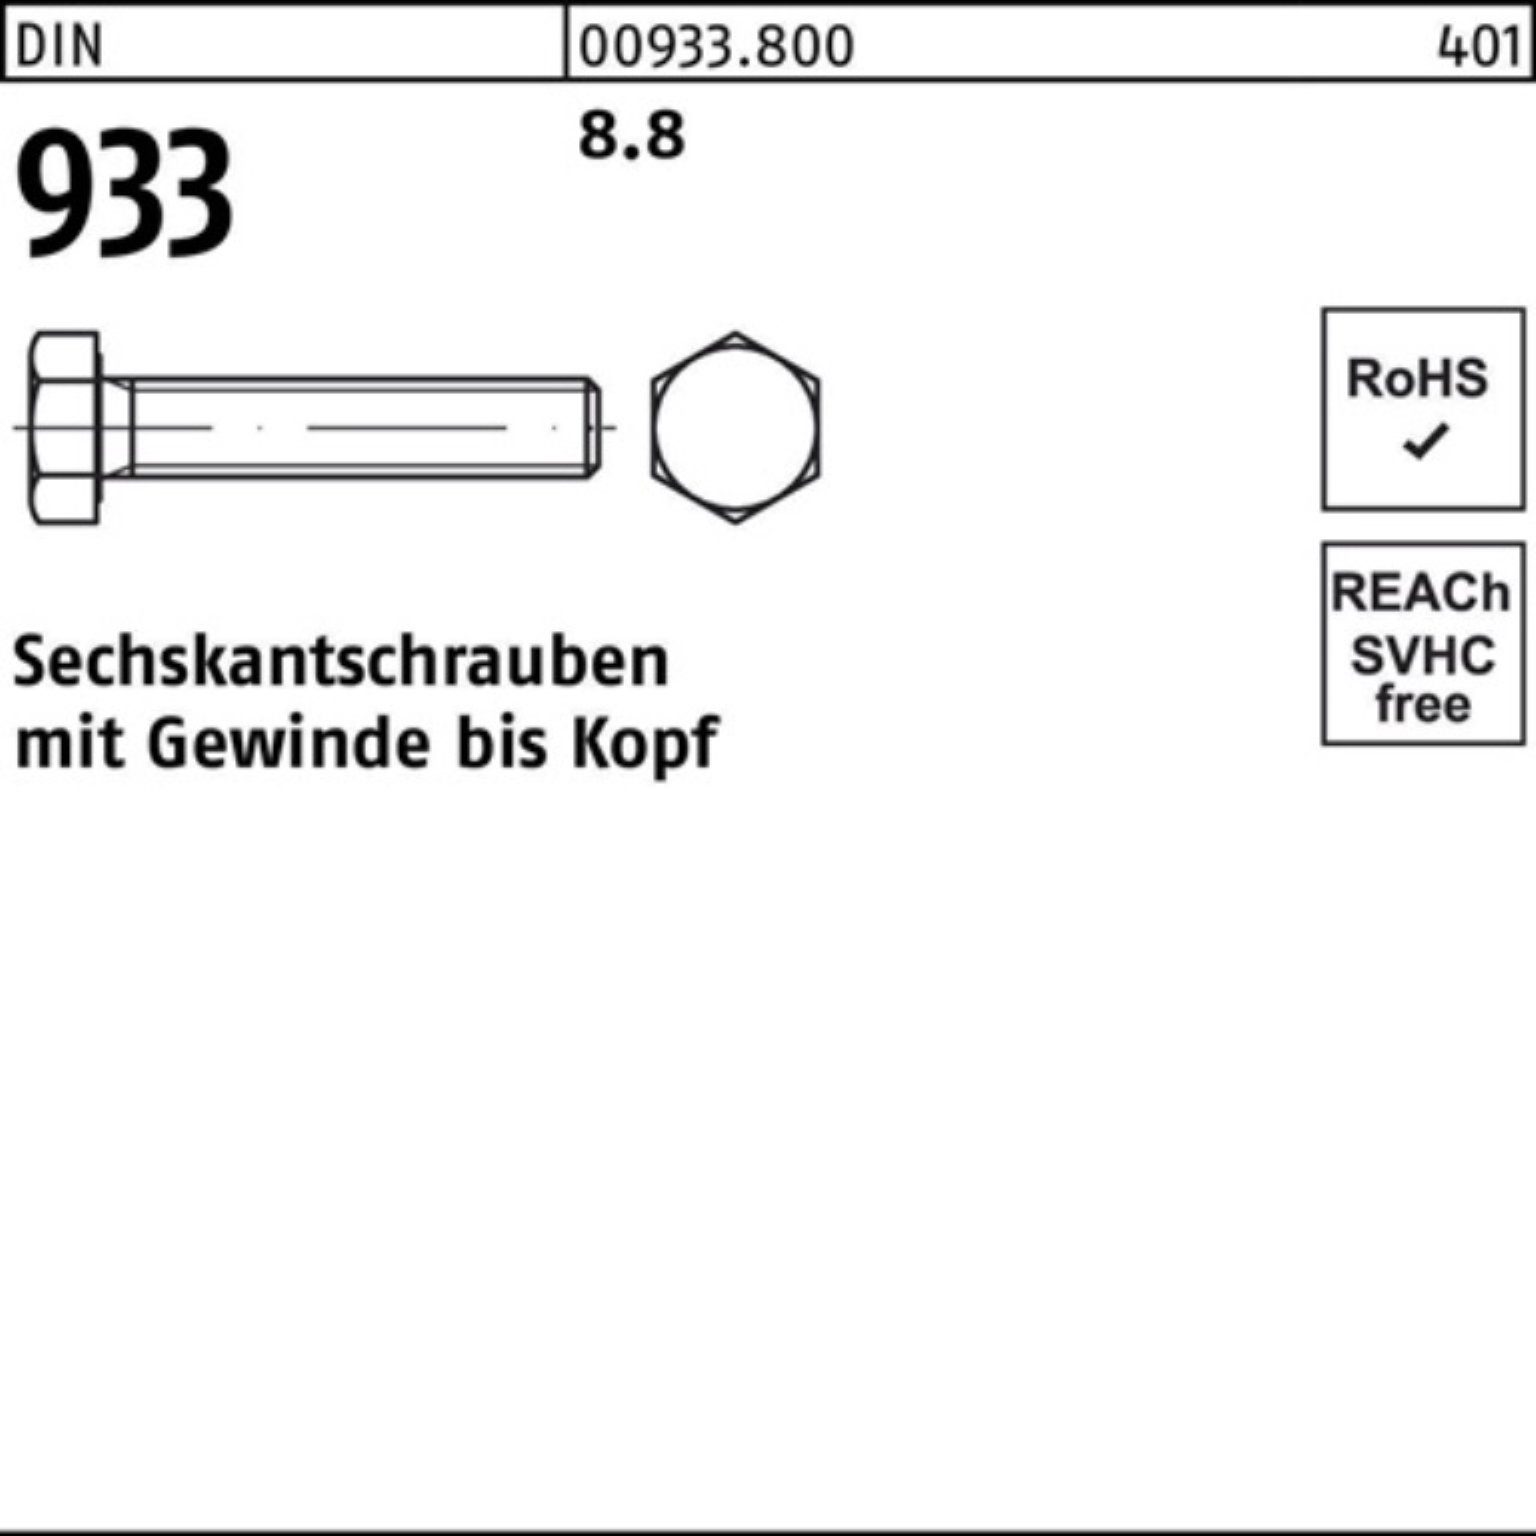 Reyher Sechskantschraube 100er 70 DIN VG M16x 25 DIN Sechskantschraube 933 Stück 8.8 Pack 933